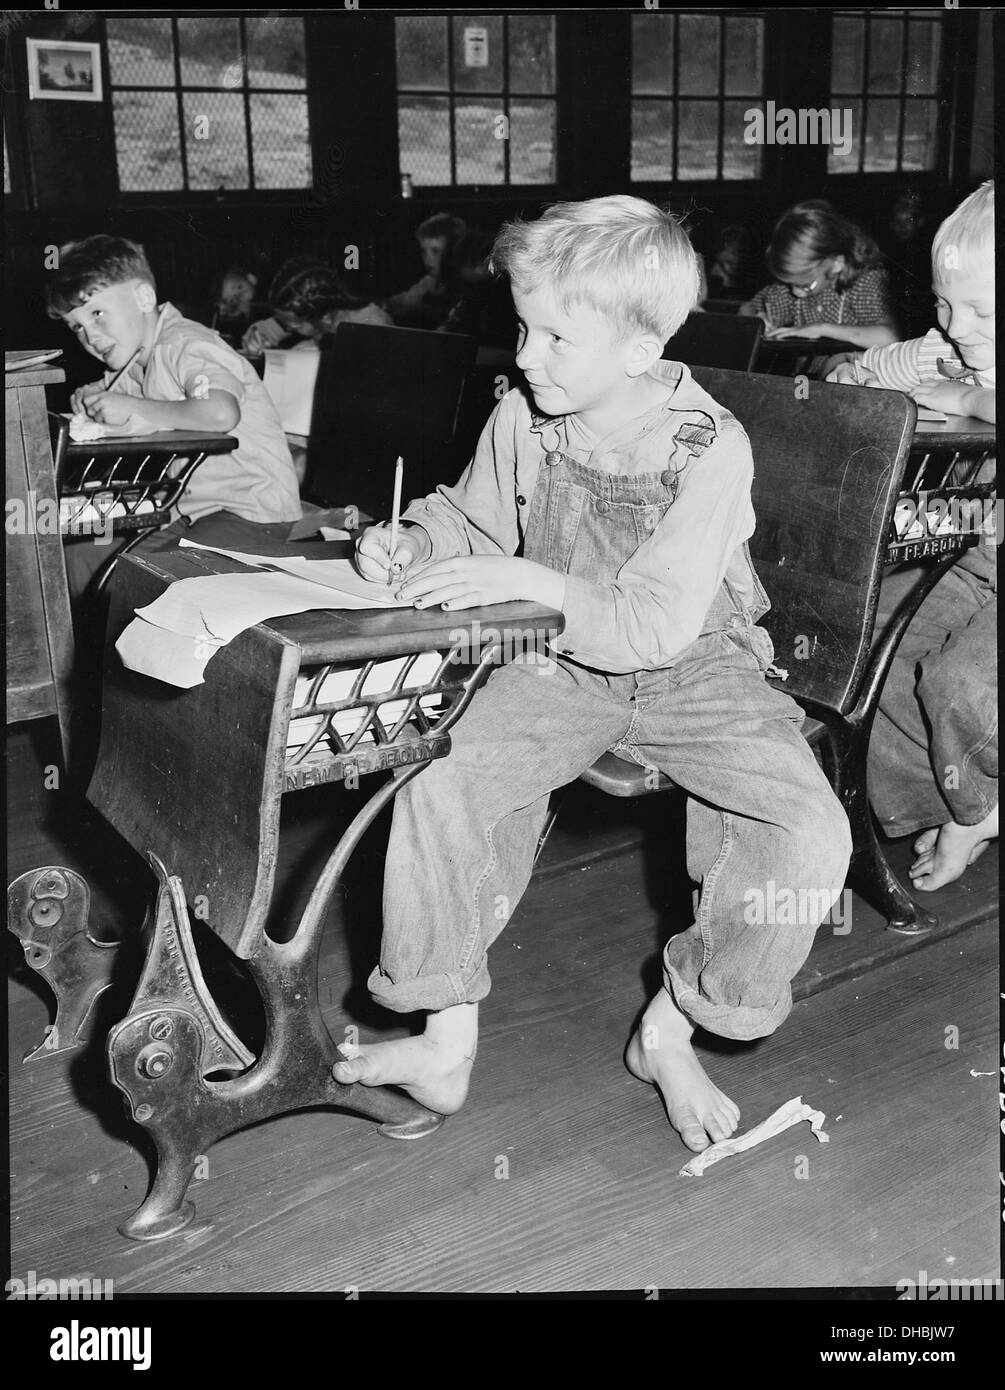 Coal miner's child in grade school. Lejunior, Harlan County, Kentucky. 541367 Stock Photo